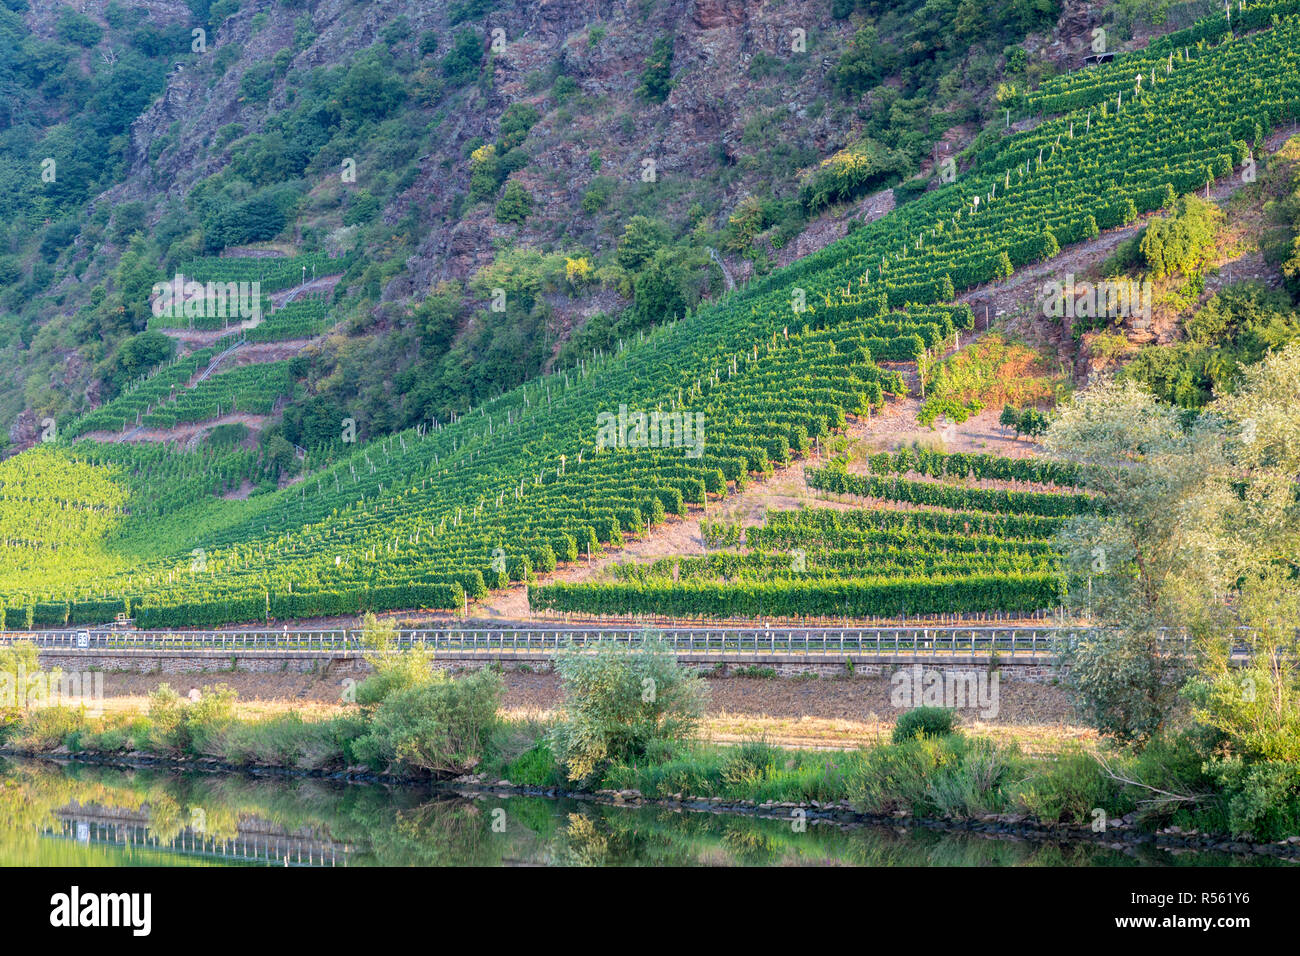 Deutschland. Weinberge steigen auf steilen, felsigen Hängen entlang der Mosel in der Nähe von Cochem, am frühen Morgen. Stockfoto